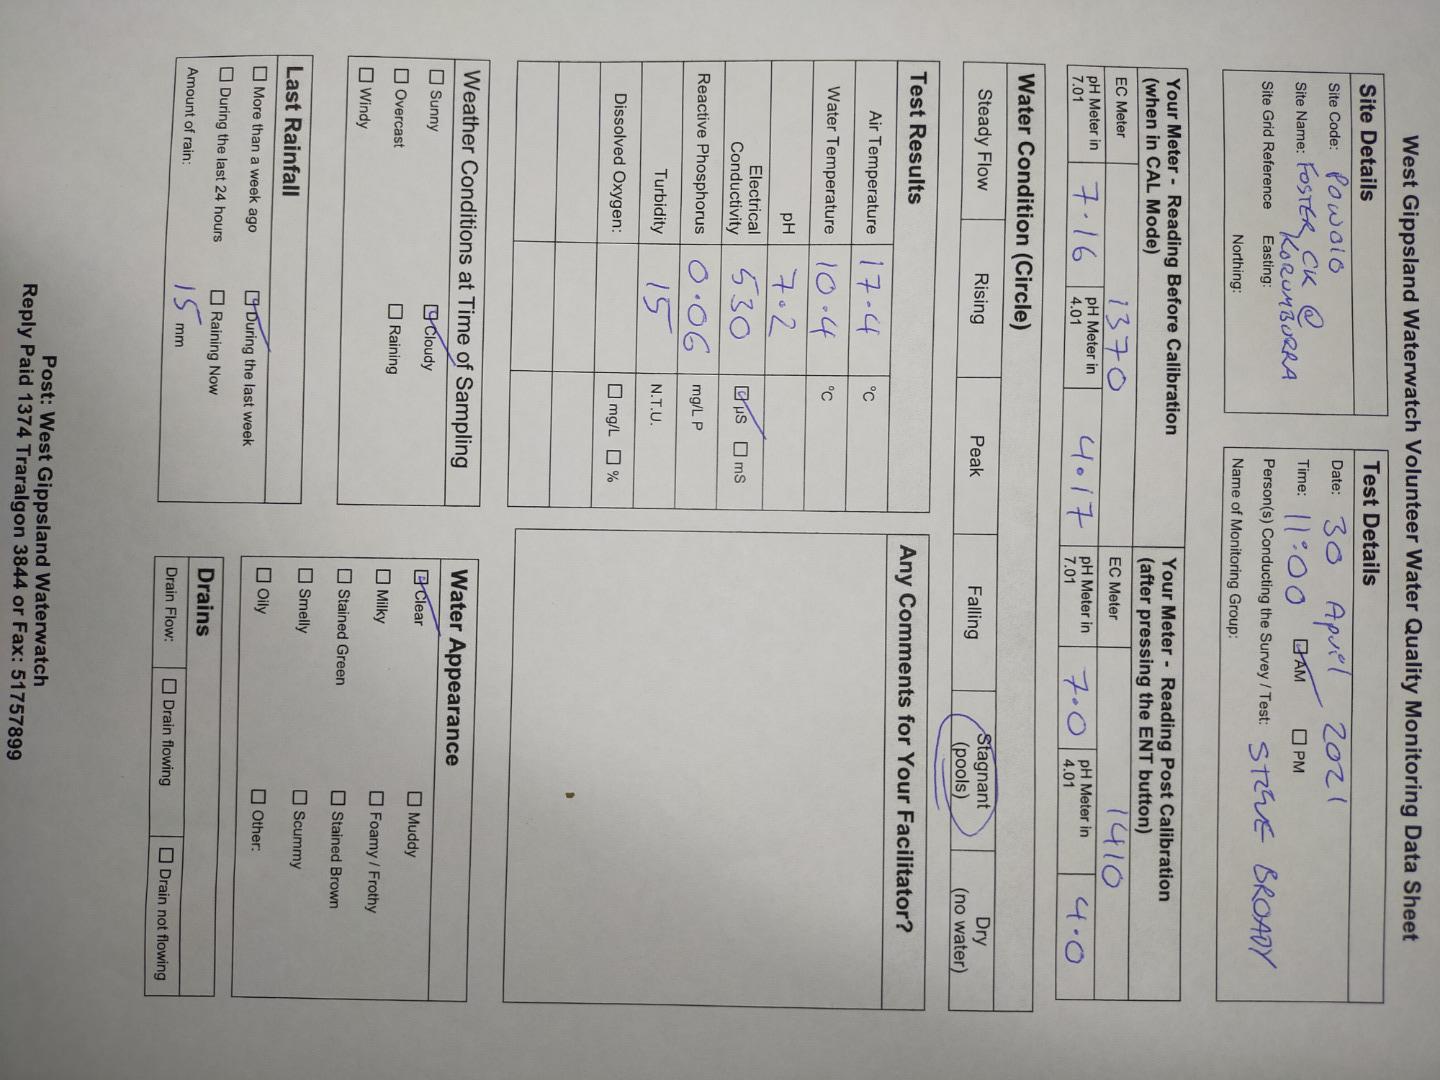 Data sheet Foster Ck Korumburra 30Apr21